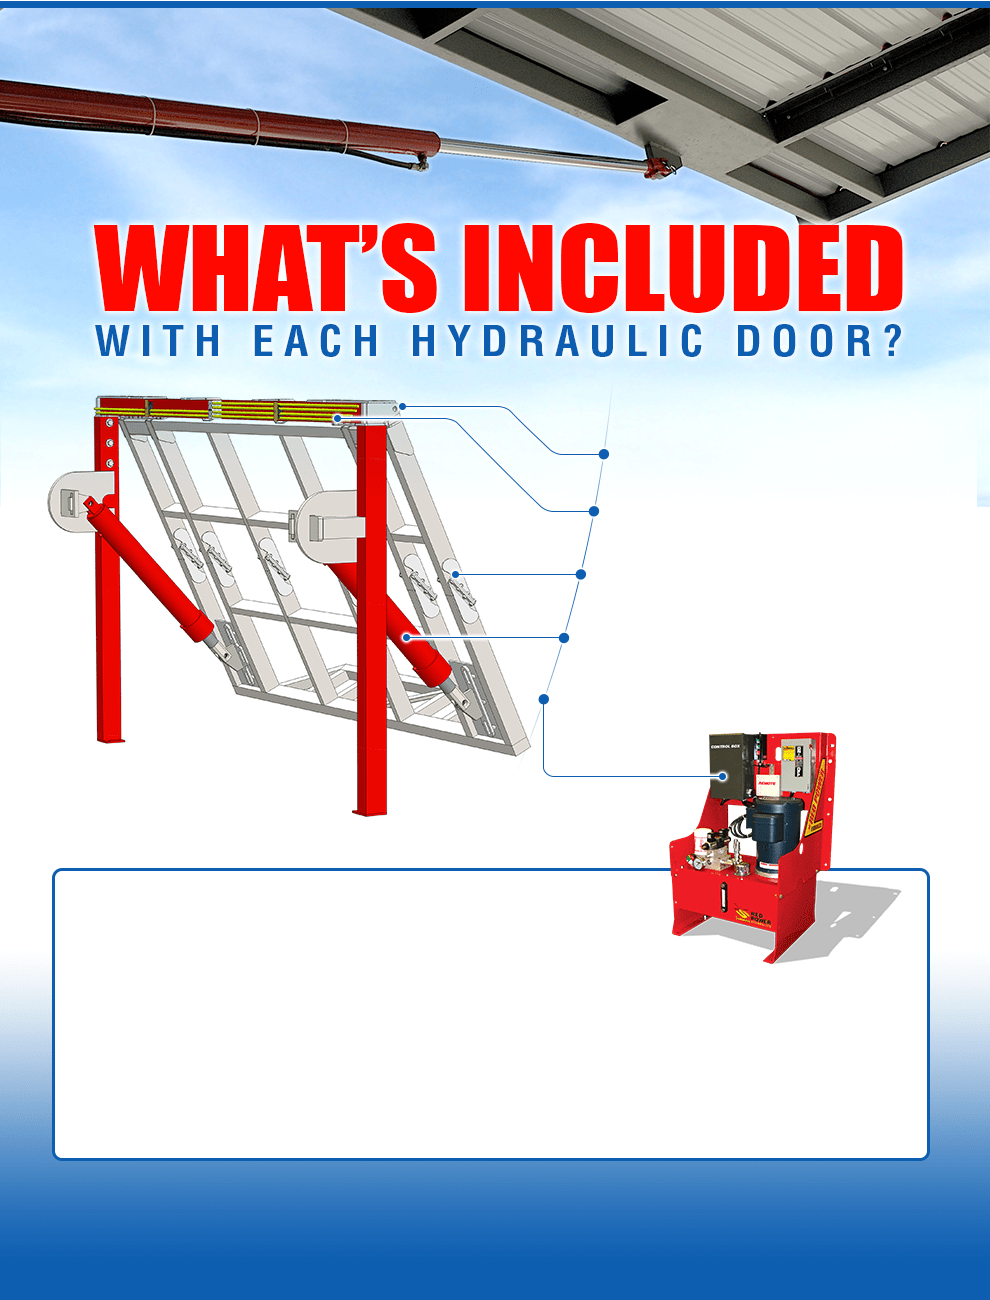 Hydraulic Schweiss door includes needed supplies